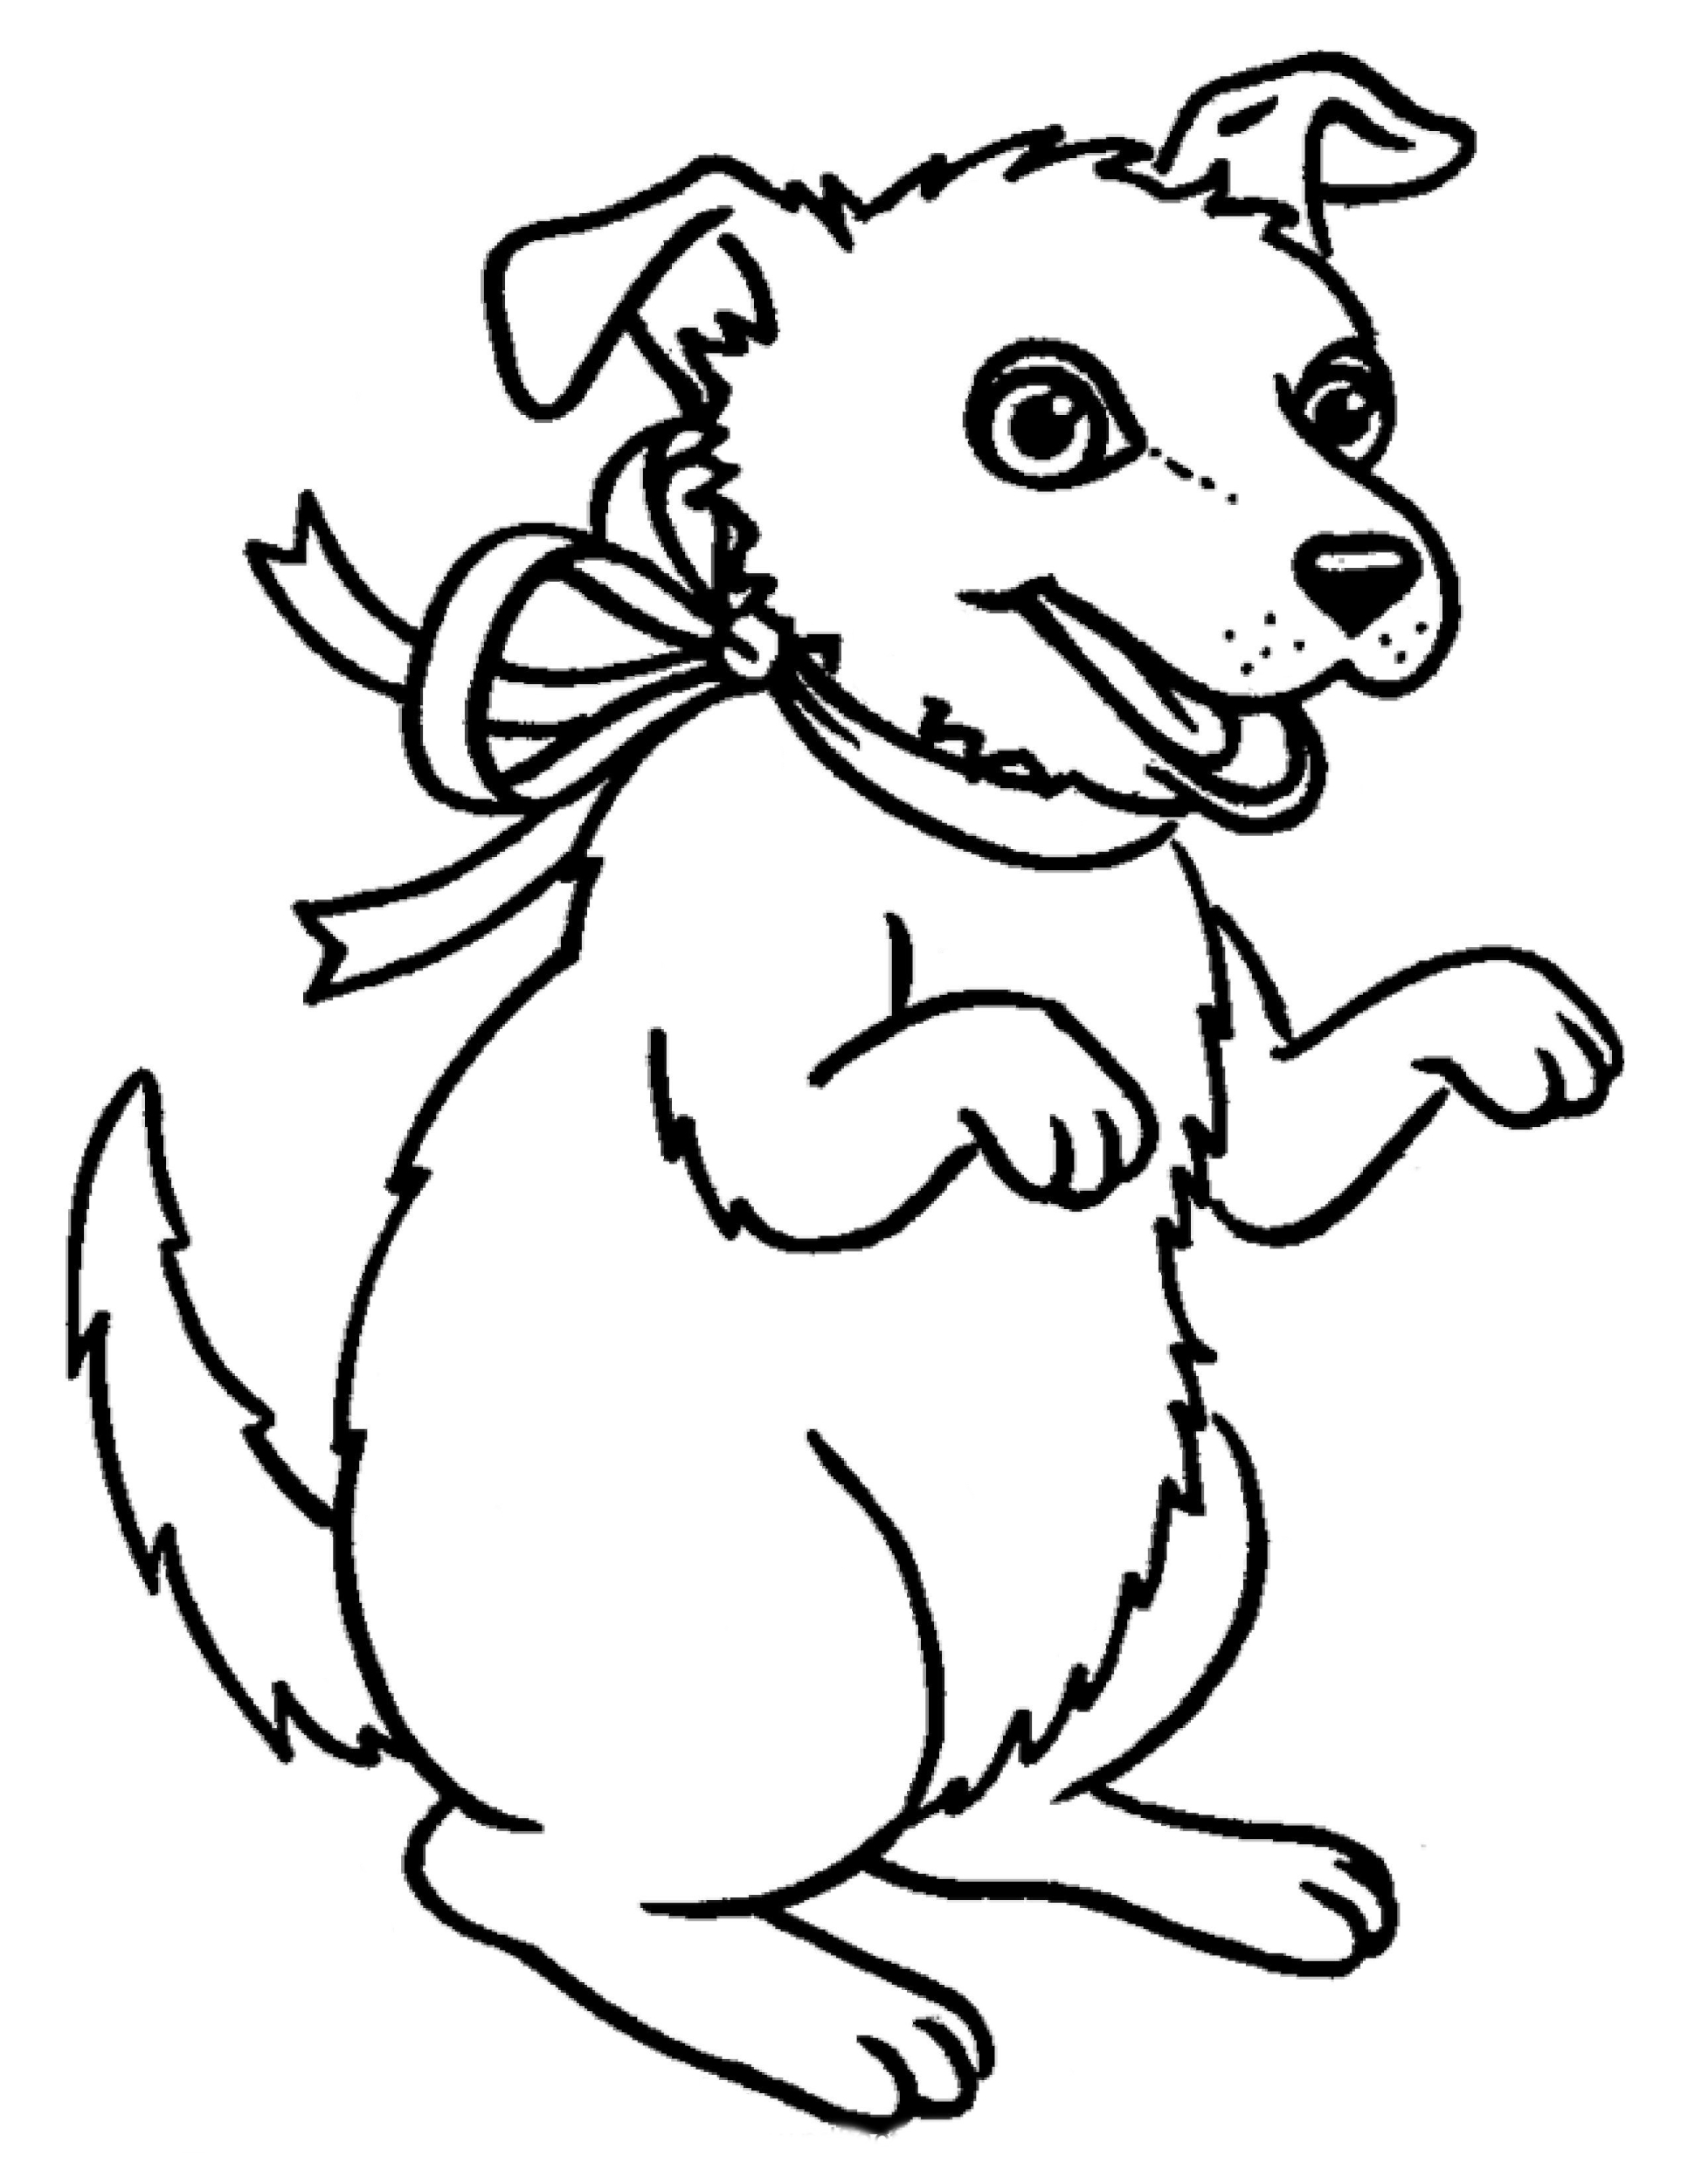 Раскраска Собака с бантиком на шее